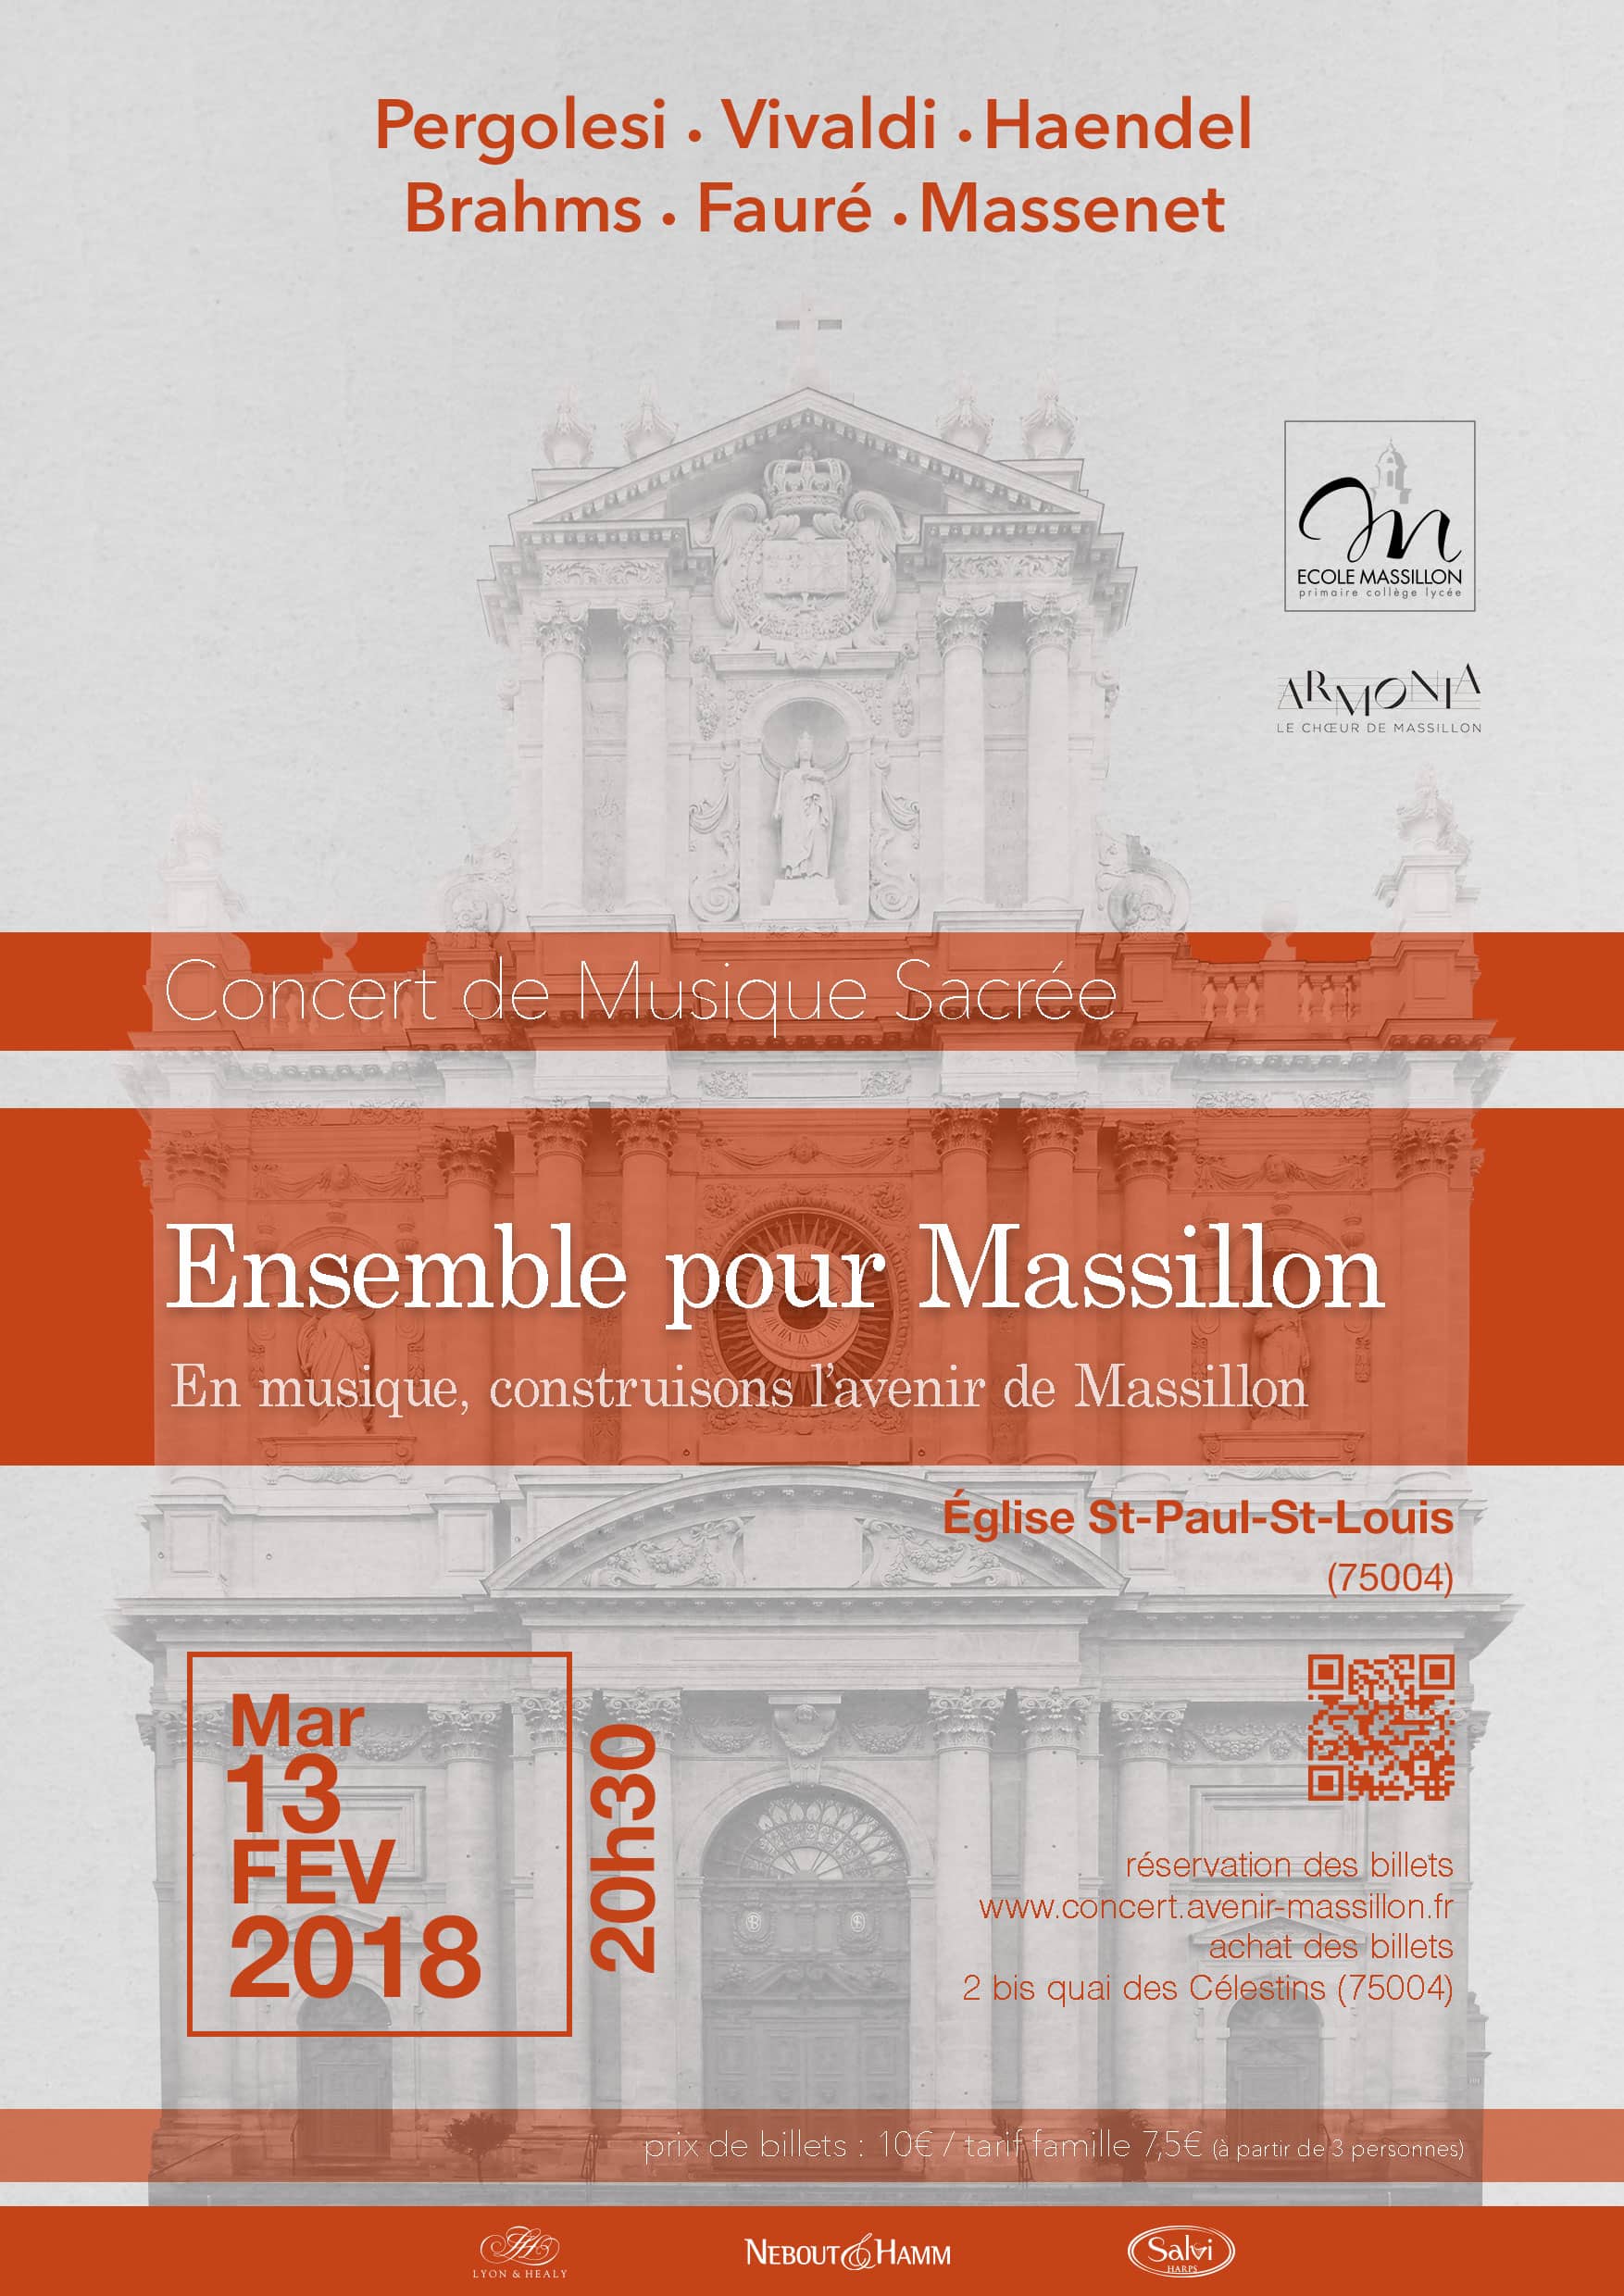 Un destin musical pour l'école Massillon.